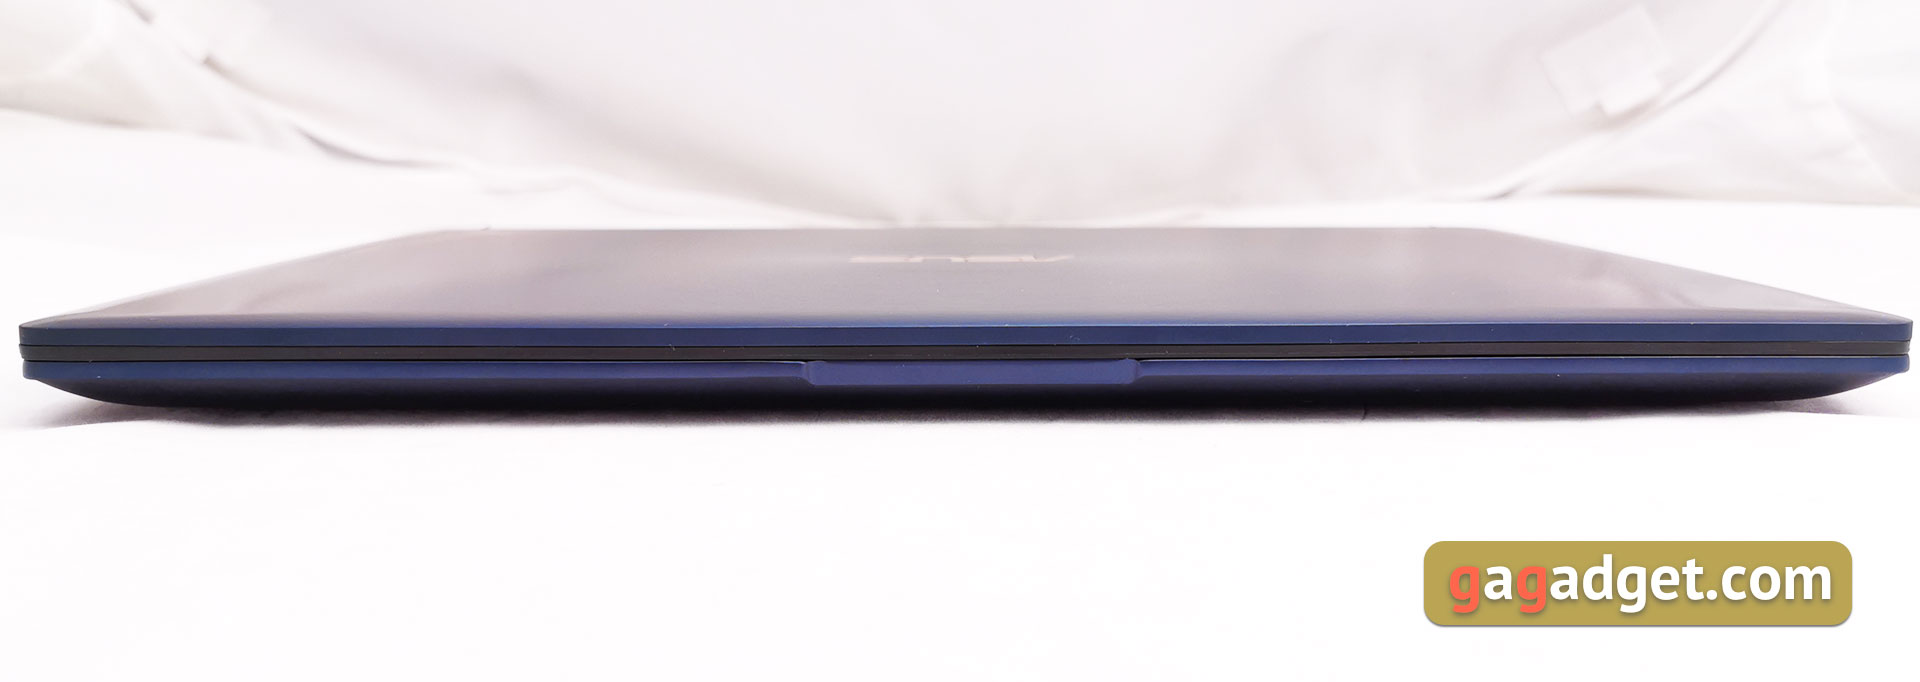 Przegląd ASUS ZenBook 13 UX333FN: mobilność i wydajność-12